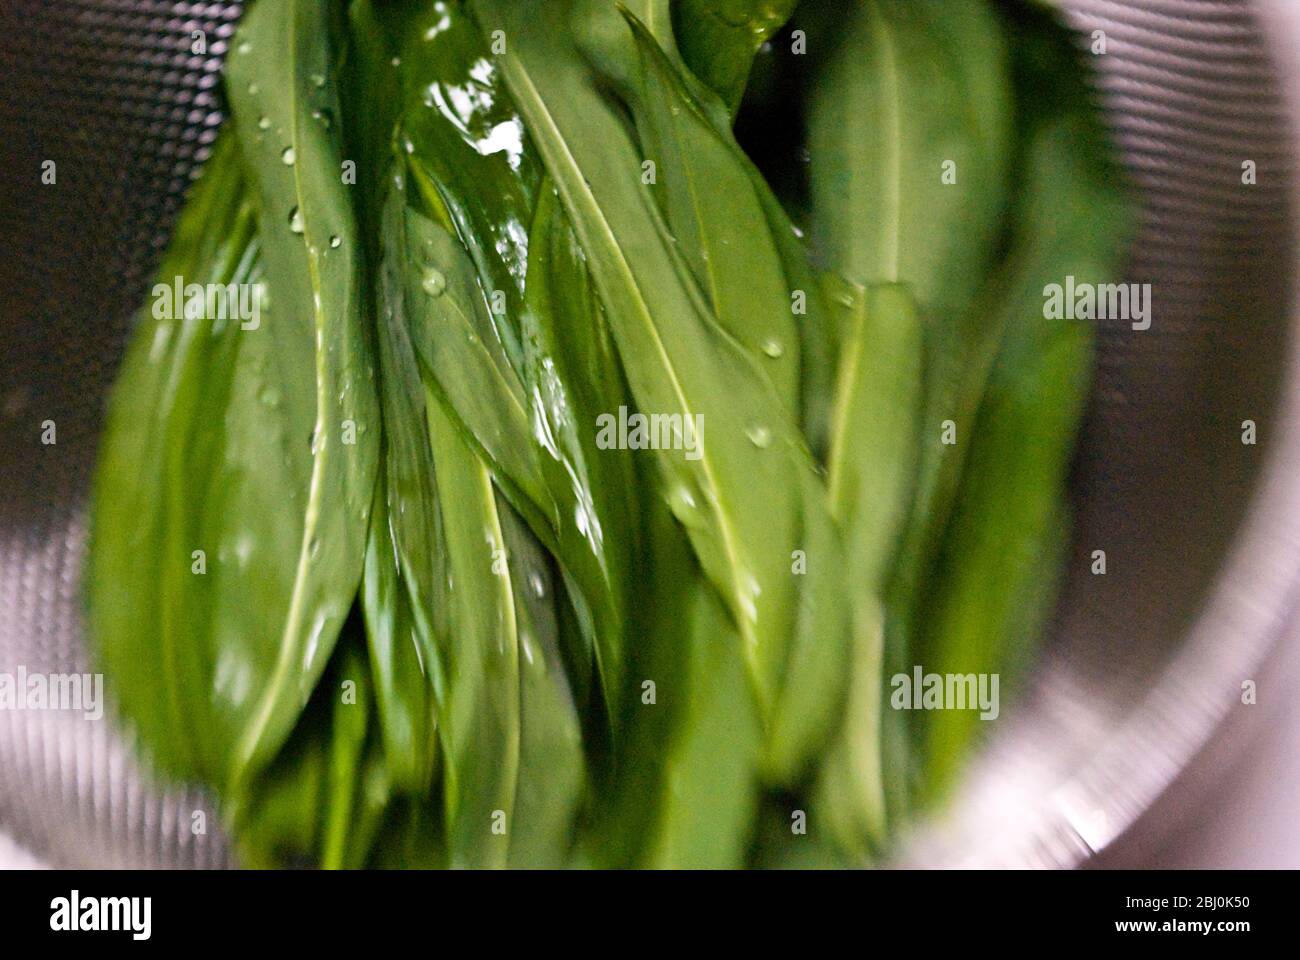 Frisch gepflückte Bärlauch-Blätter werden vor dem Makeln von Bärlauch 'Pesto' gespült. - Stockfoto